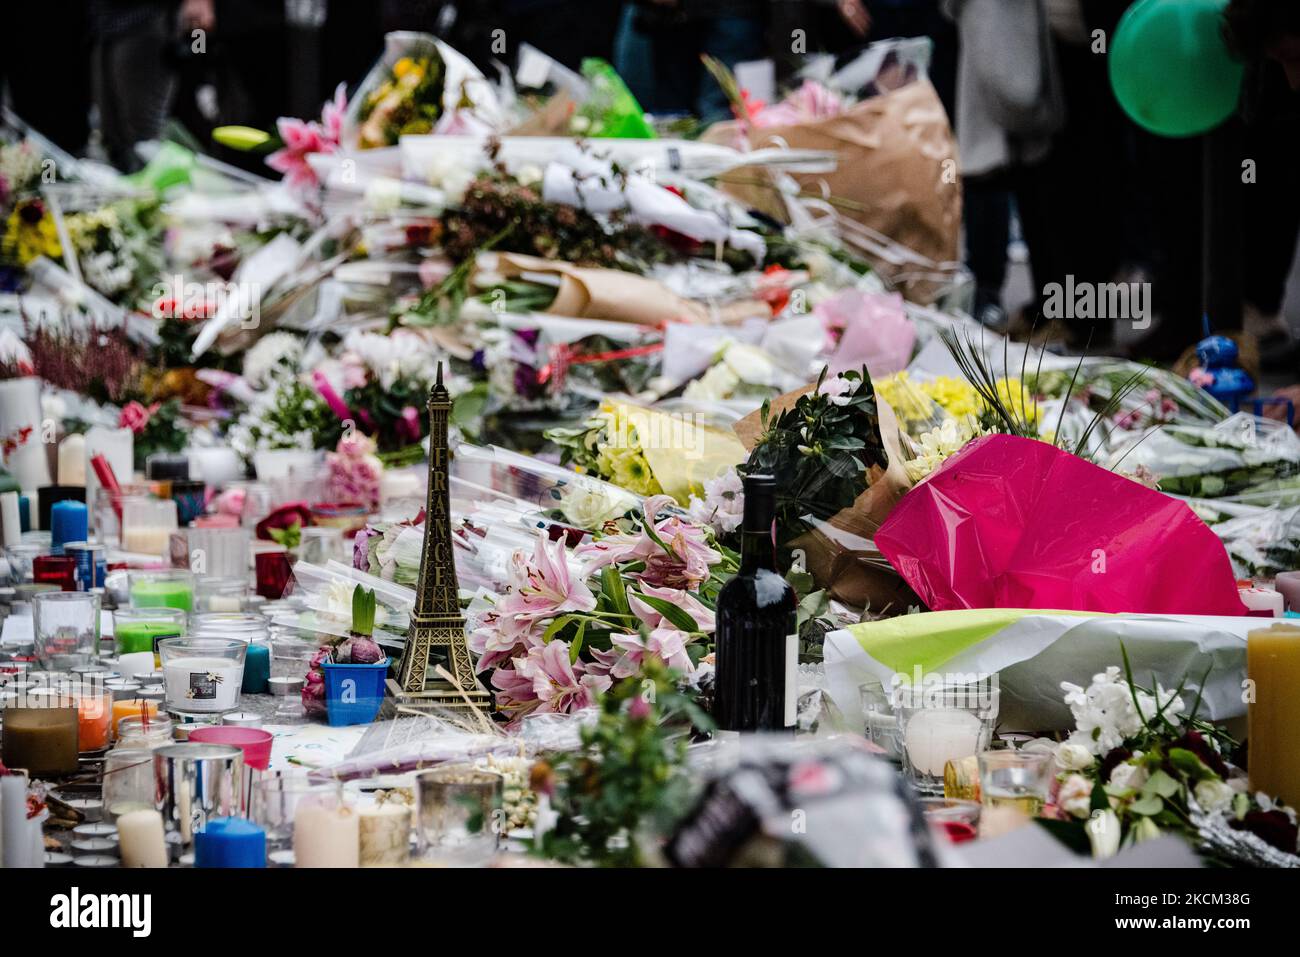 Sur 16 novembre 2015, trois jours après les attaques de 13 novembre 2015 qui ont tué 130 personnes et en ont blessé plus de 400 dans une série d'attaques qui ont frappé plusieurs endroits à Paris, dont le Stade de France, terrasses de café et salle de concert Bataclan l'émotion est à son apogée dans les rues de Paris, comme ici en face du restaurant 'le petit Cambodge' où les passants jettent des fleurs, des bougies et des messages de soutien en hommage aux victimes. (Photo de Samuel Boivin/NurPhoto) Banque D'Images